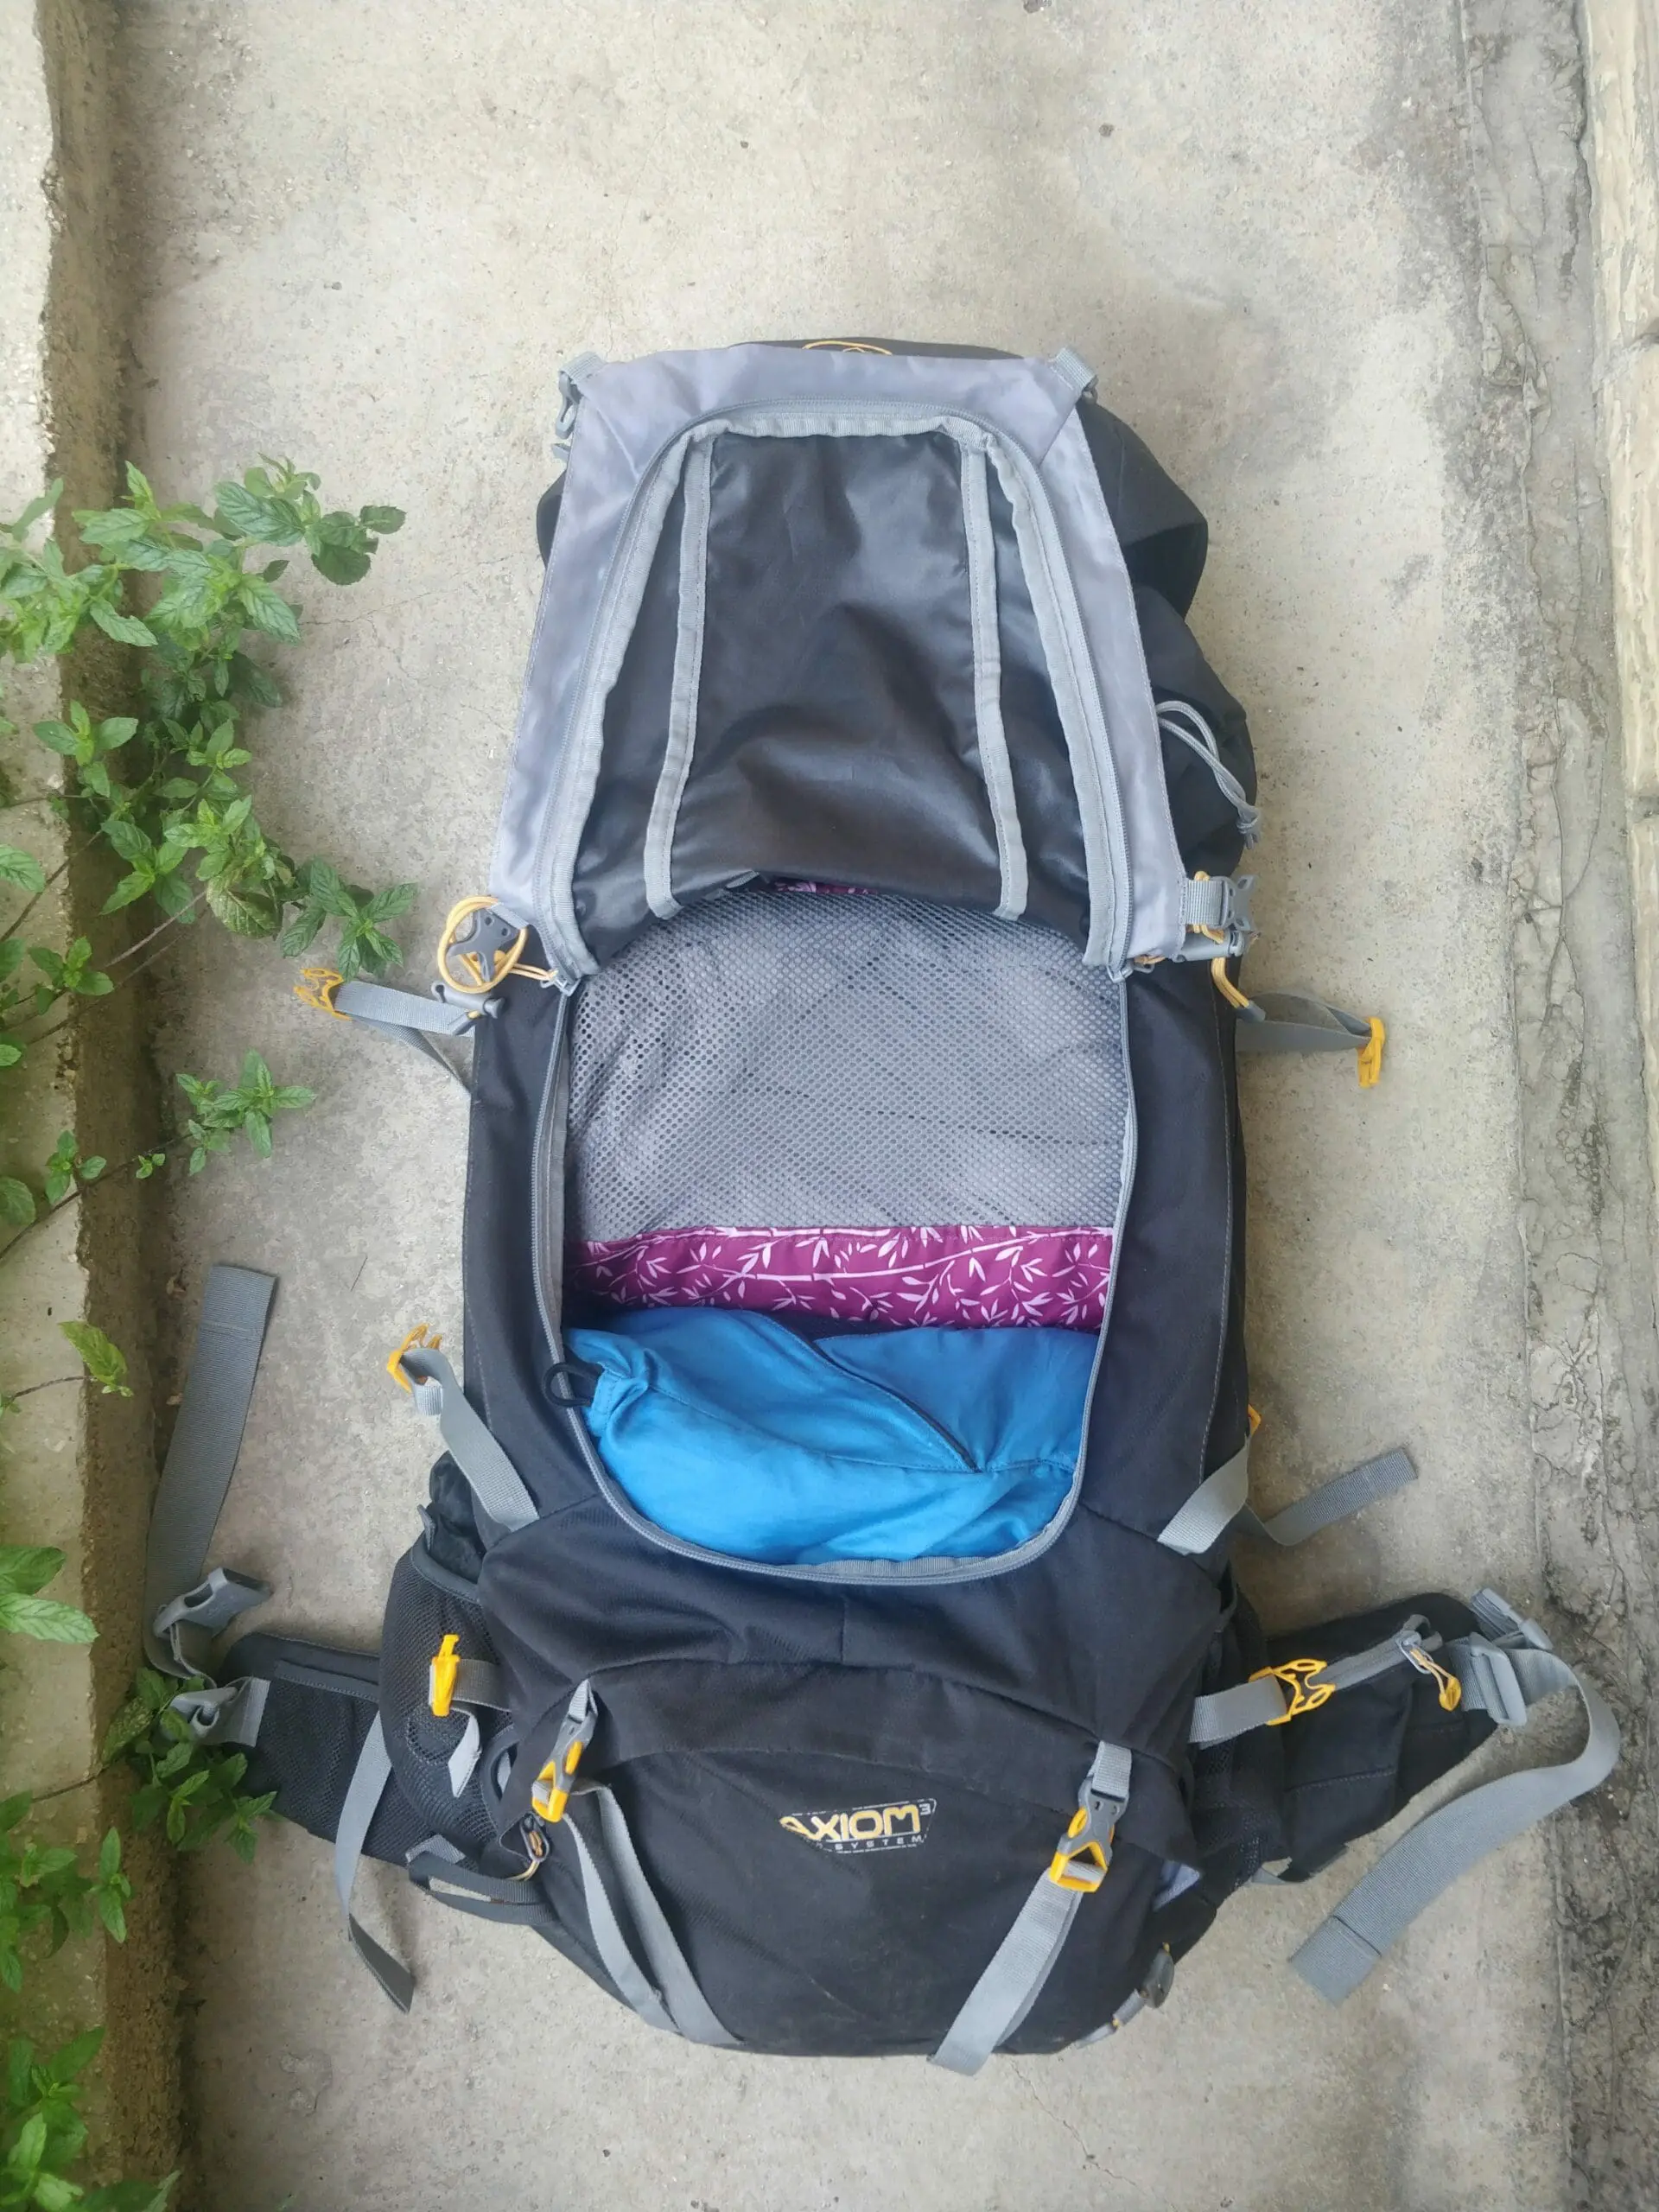 Lowe Alpine Diran Backpack Review